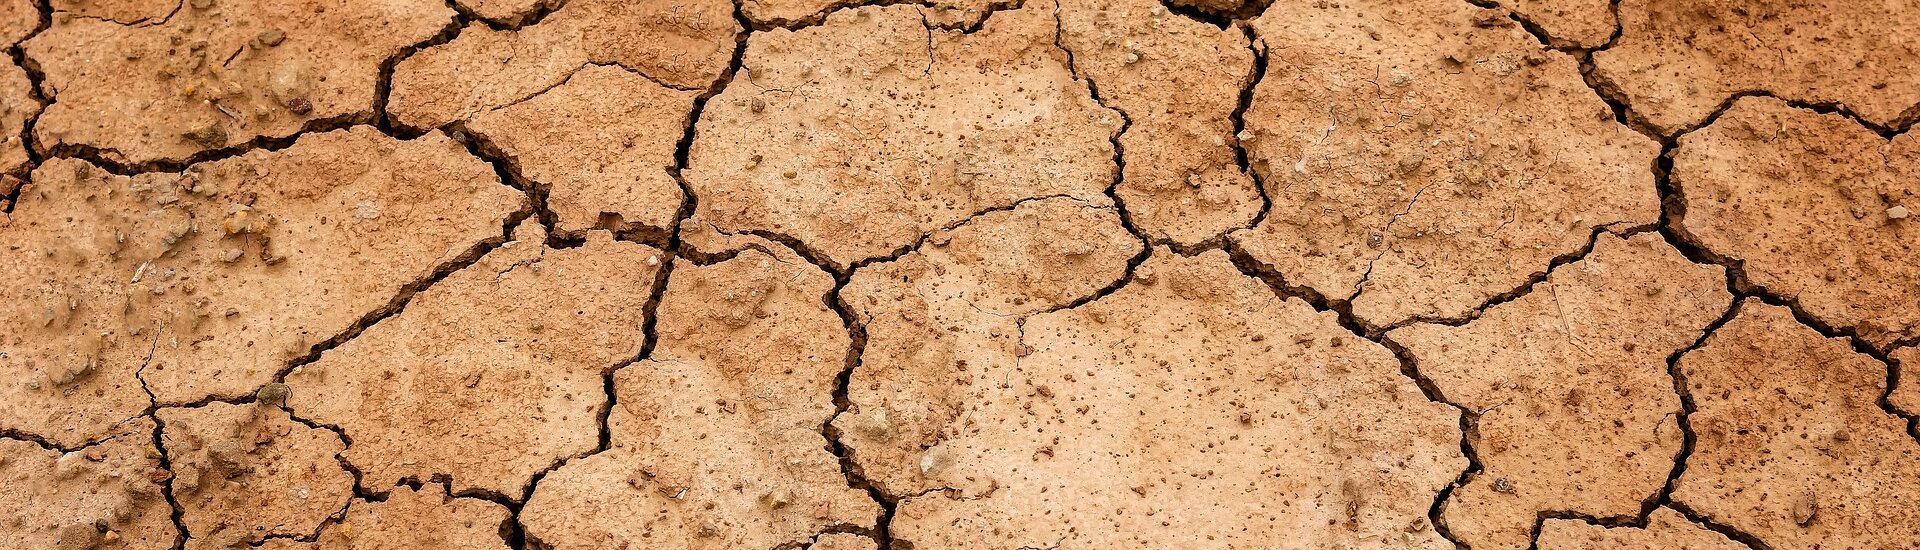 La sécheresse, un enjeu majeur dans la commune de Murs Vaucluse